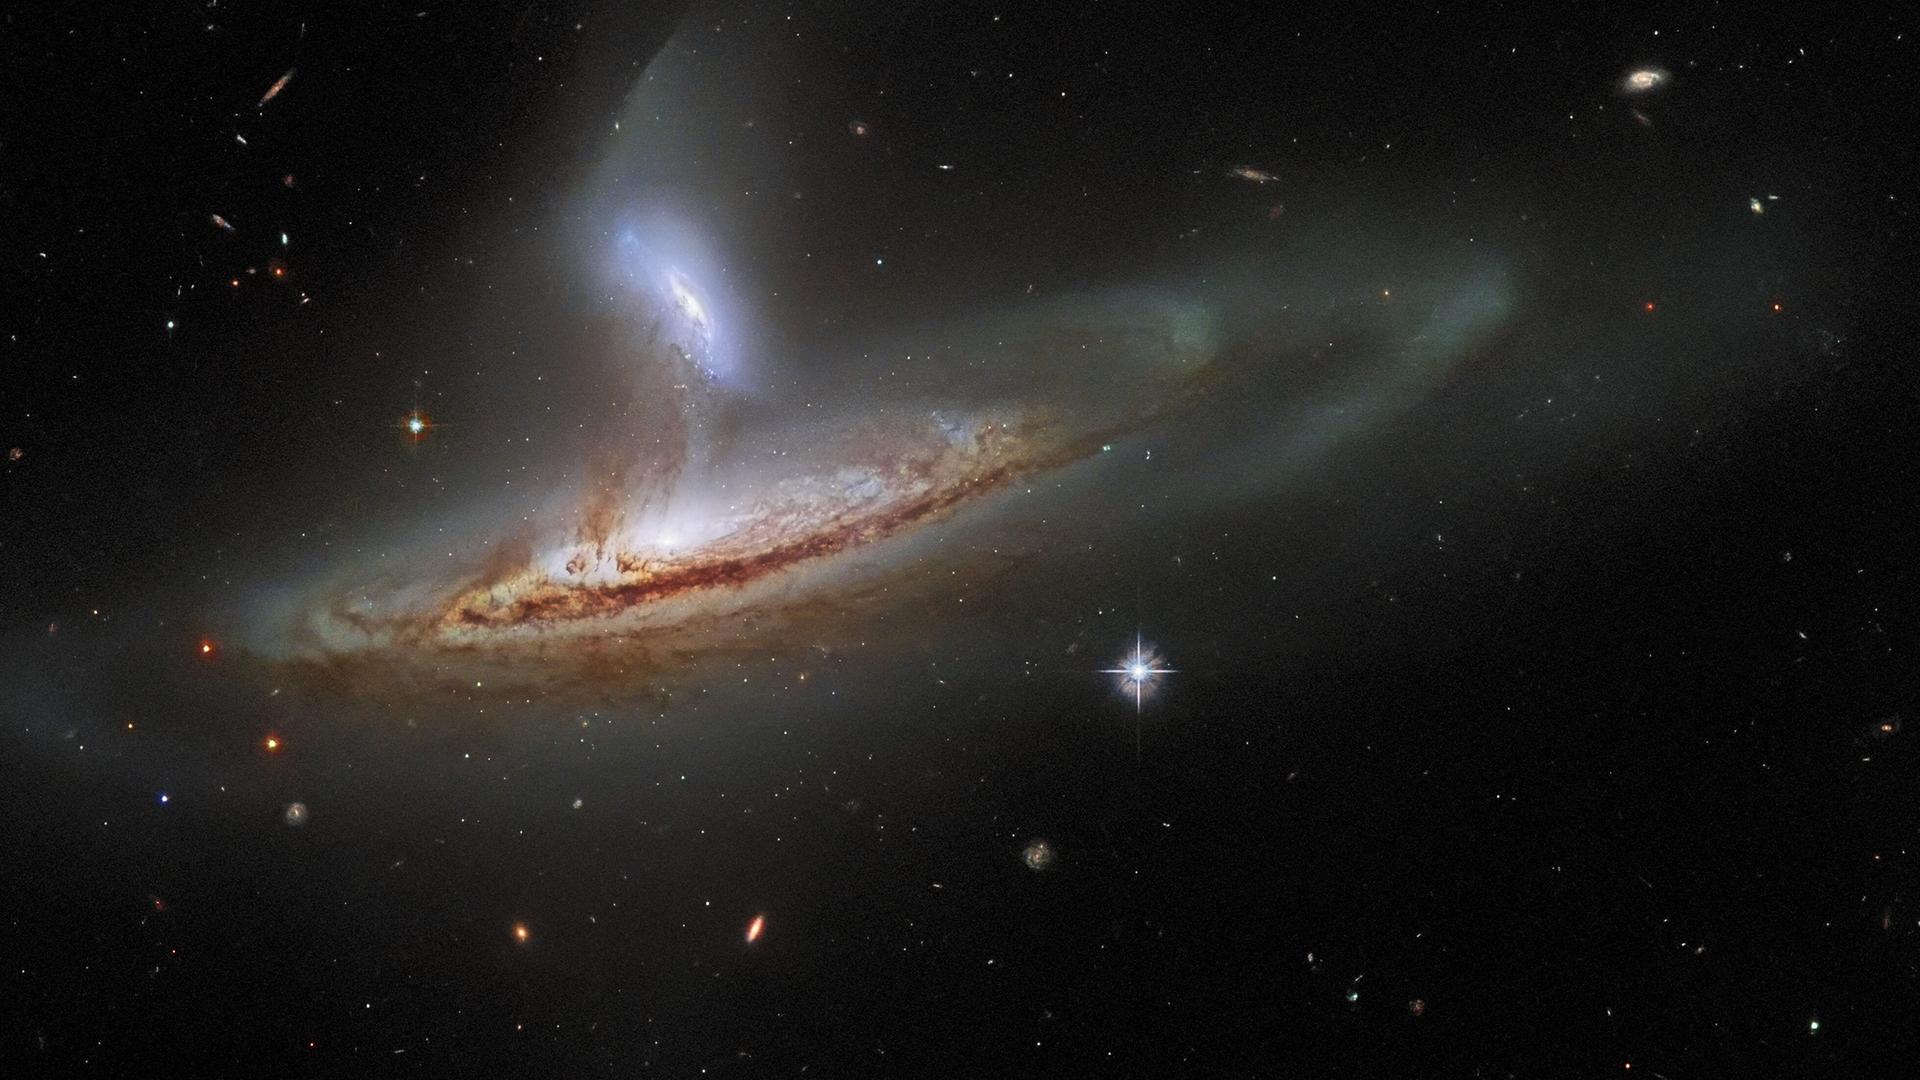 Das Universum wie gemalt: Das Objekt Arp 282 – und viele weiteren Galaxien im Hintergrund